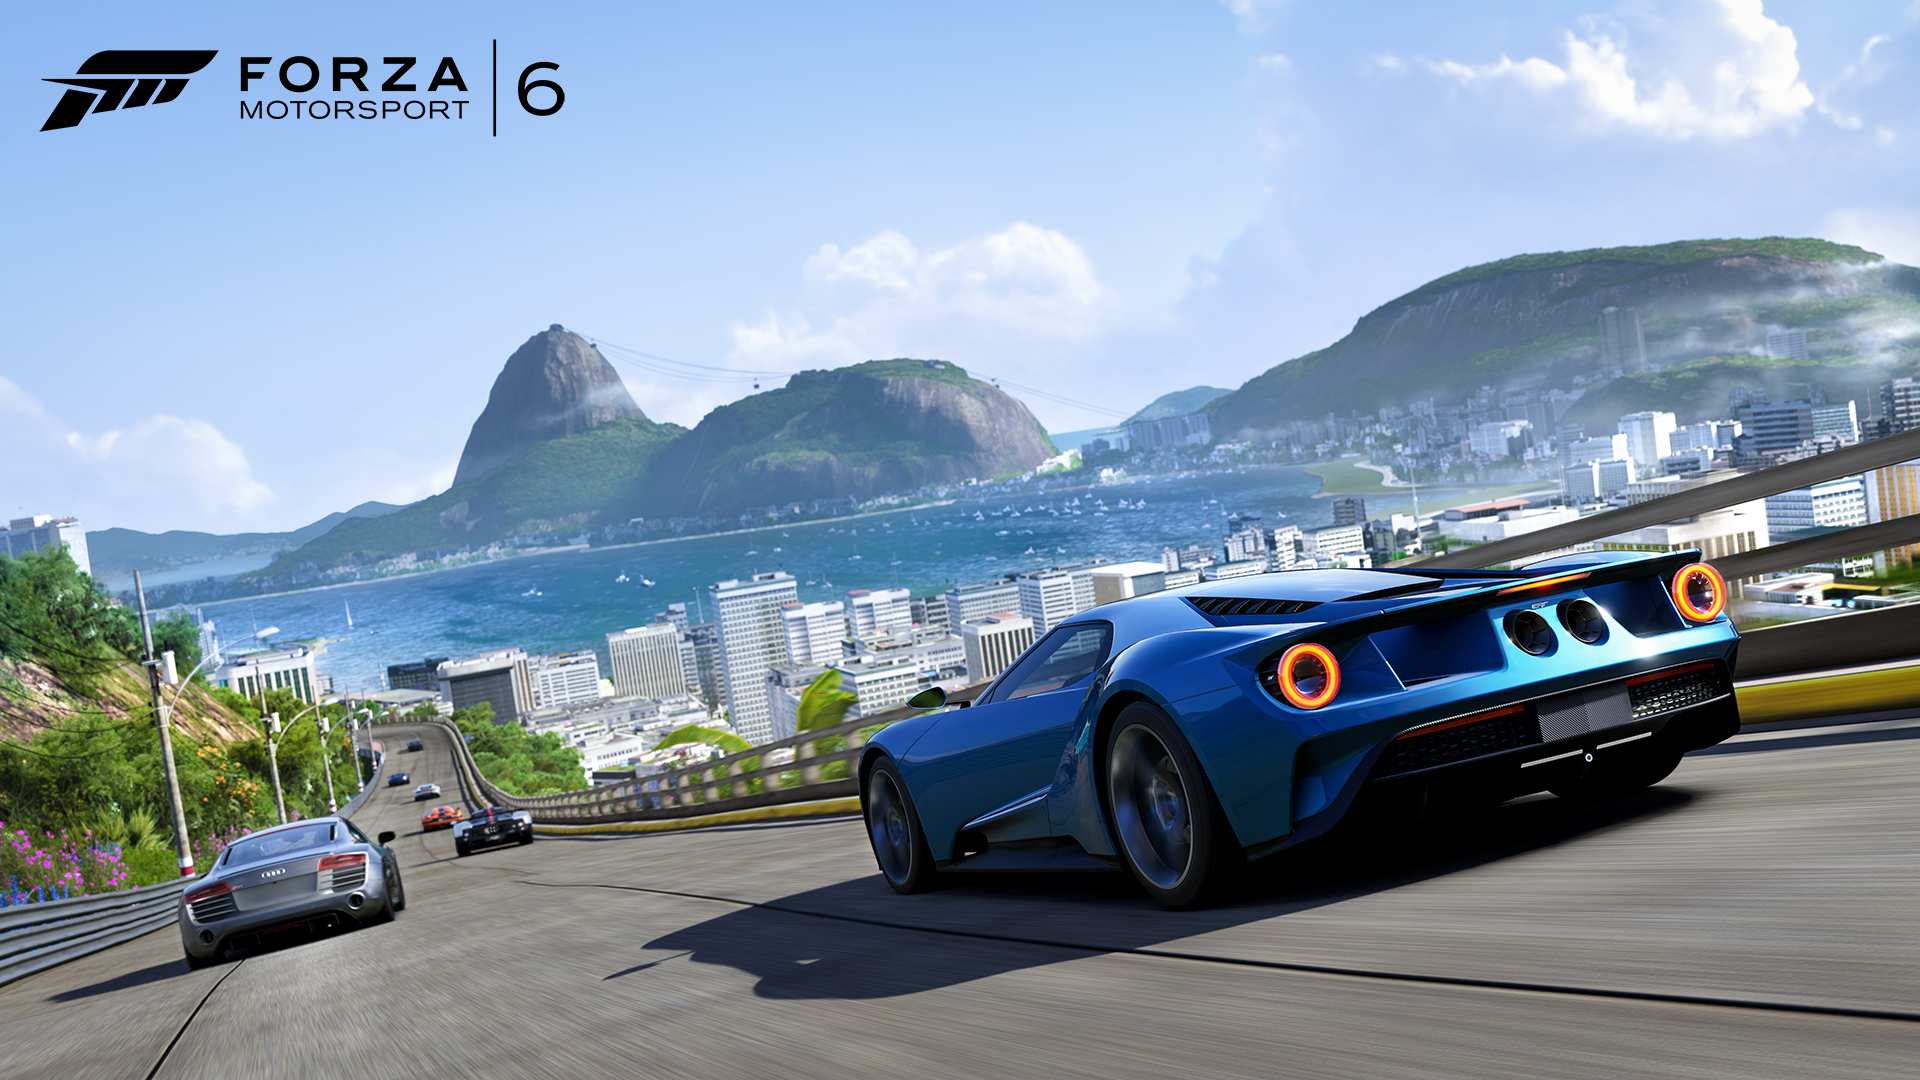 Descargar fondos de escritorio de Forza Motorsport 6 HD